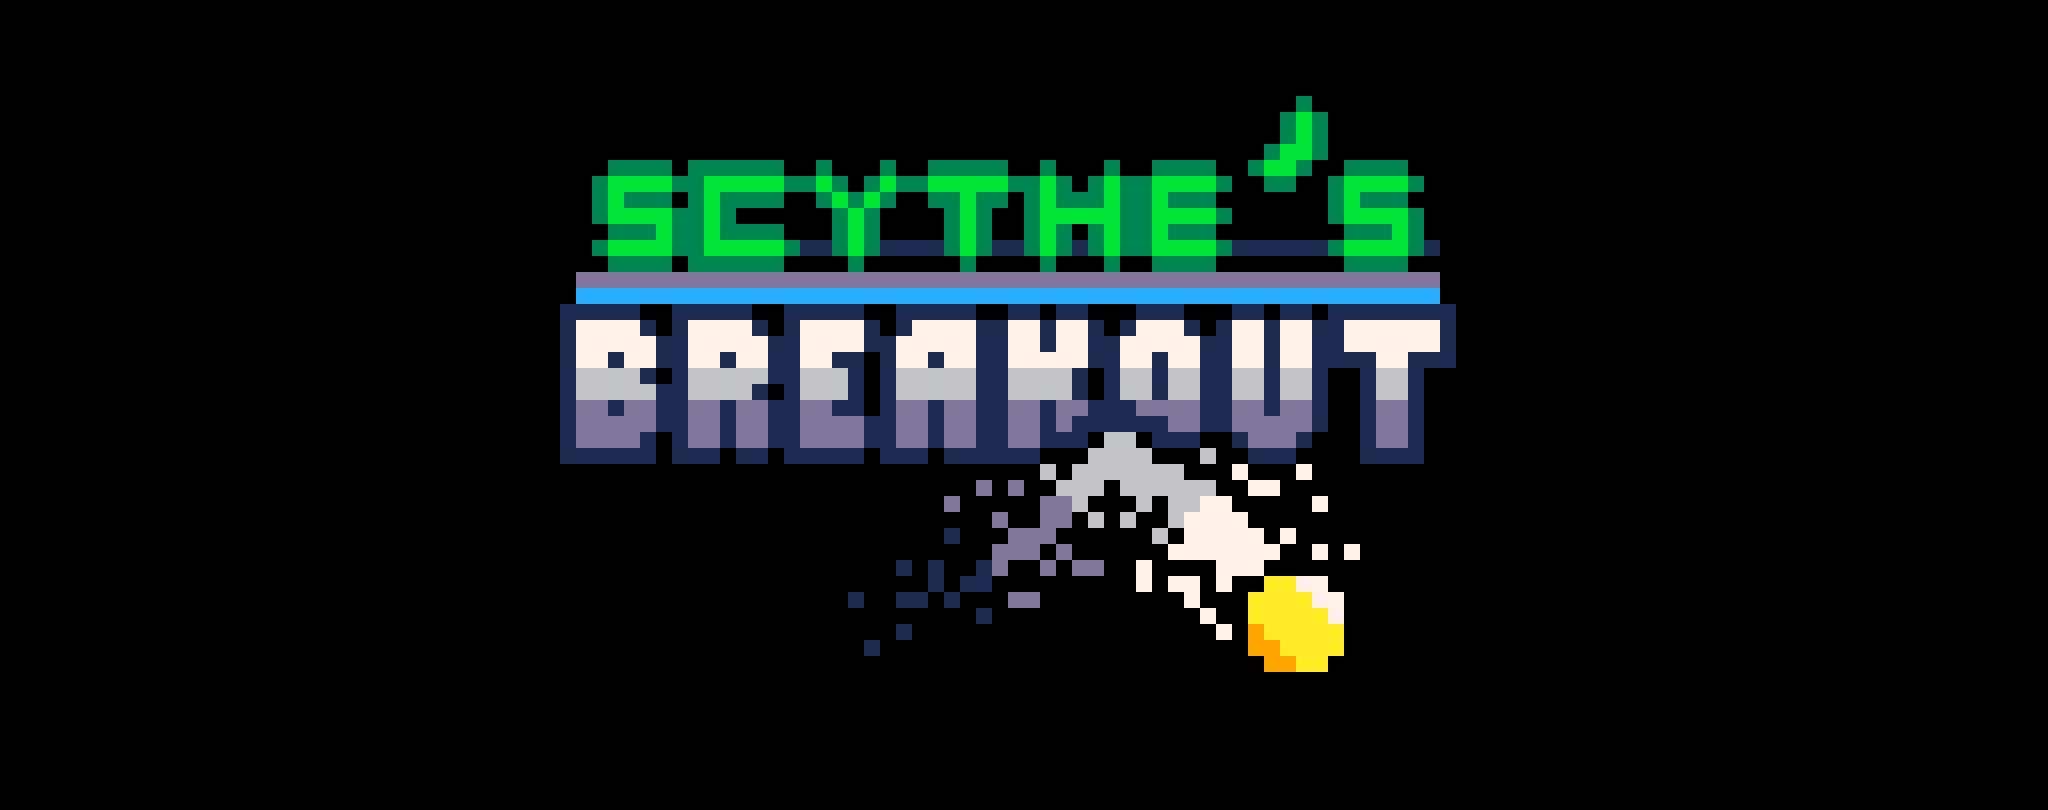 Scythe's Breakout